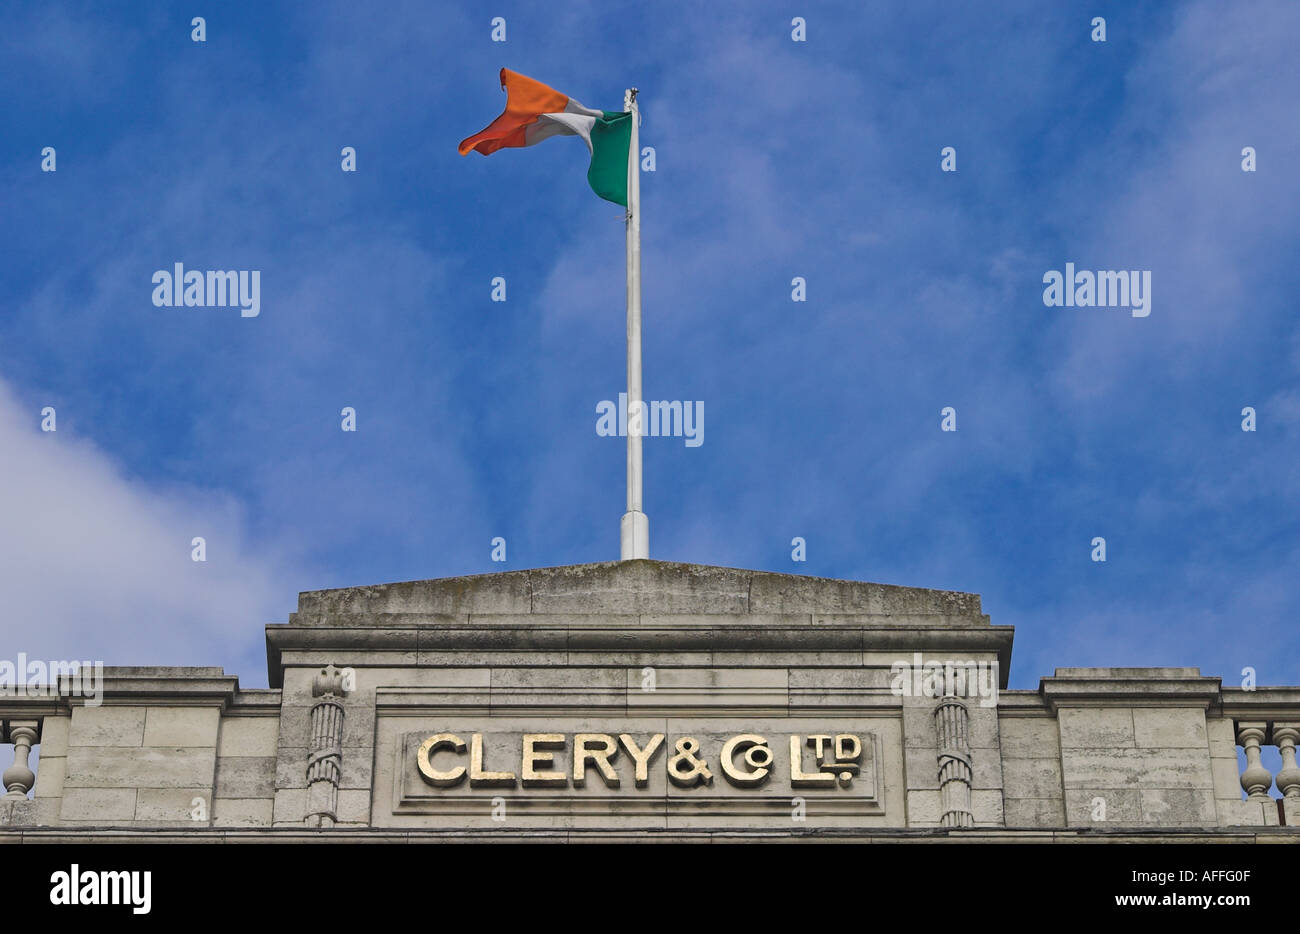 La bandera irlandesa sobrevolar Clery y Co Ltd, la famosa tienda en O'Connell Street Dublin Foto de stock